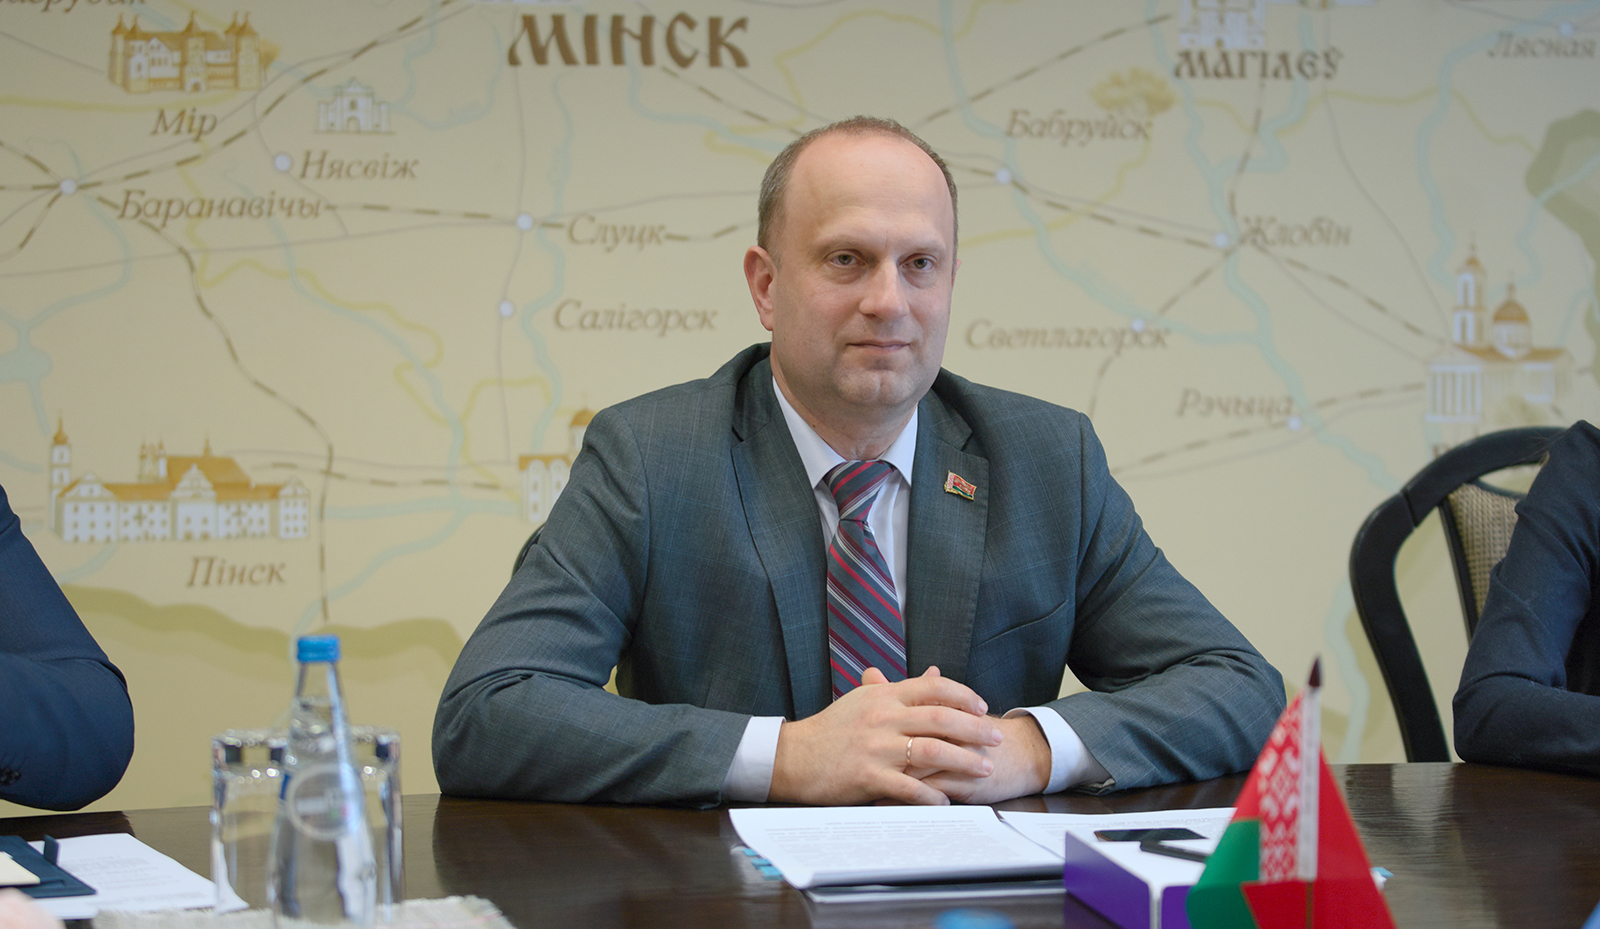 Юрий Чеботарь: деятельность ООН в Беларуси будет способствовать достижению ключевых целей и приоритетов развития